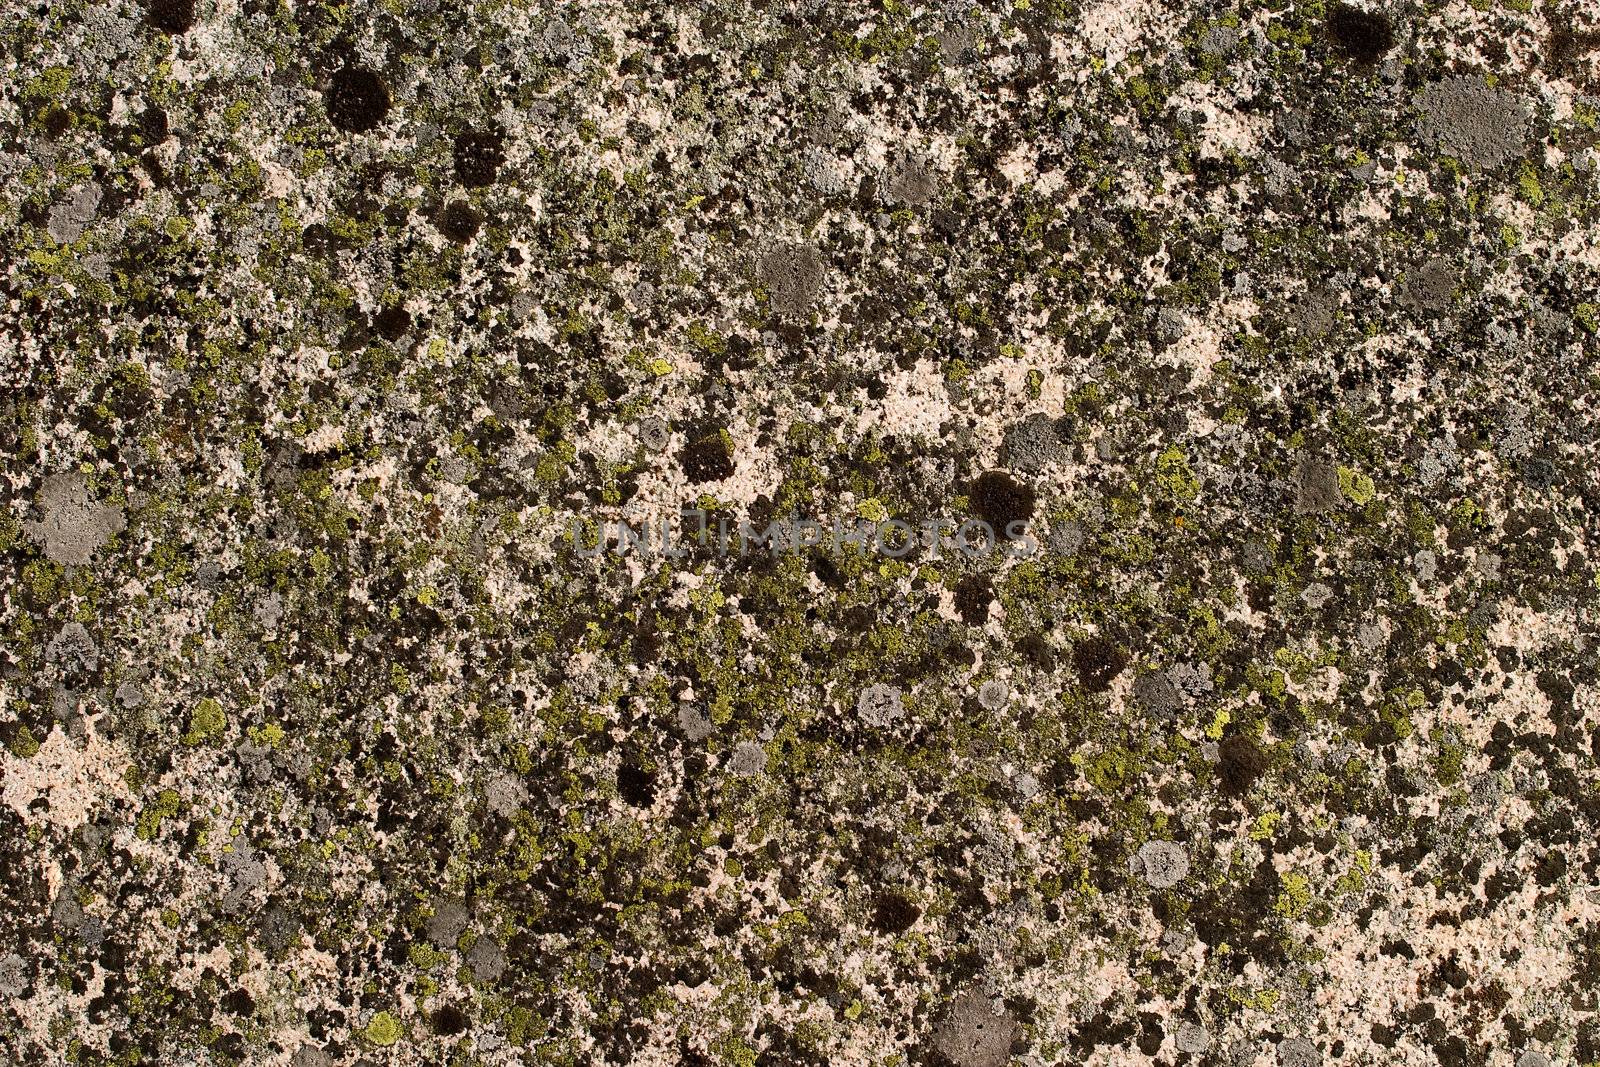 A background rock moss texture